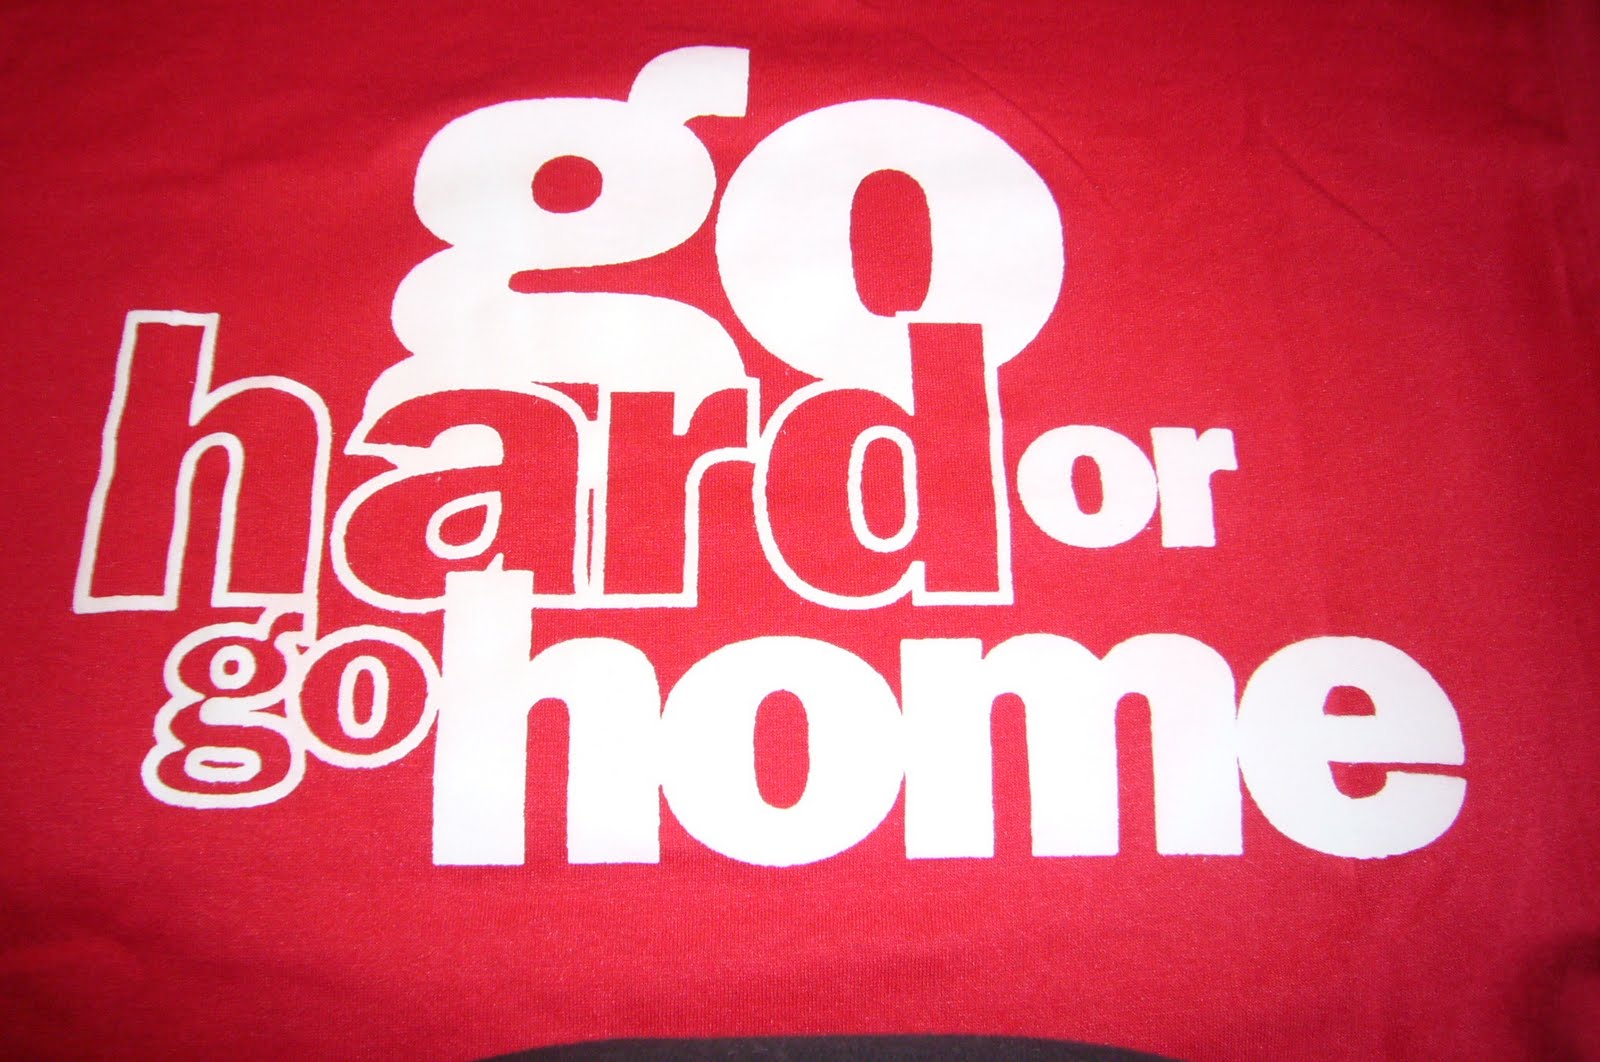 Go Hard or Go Home